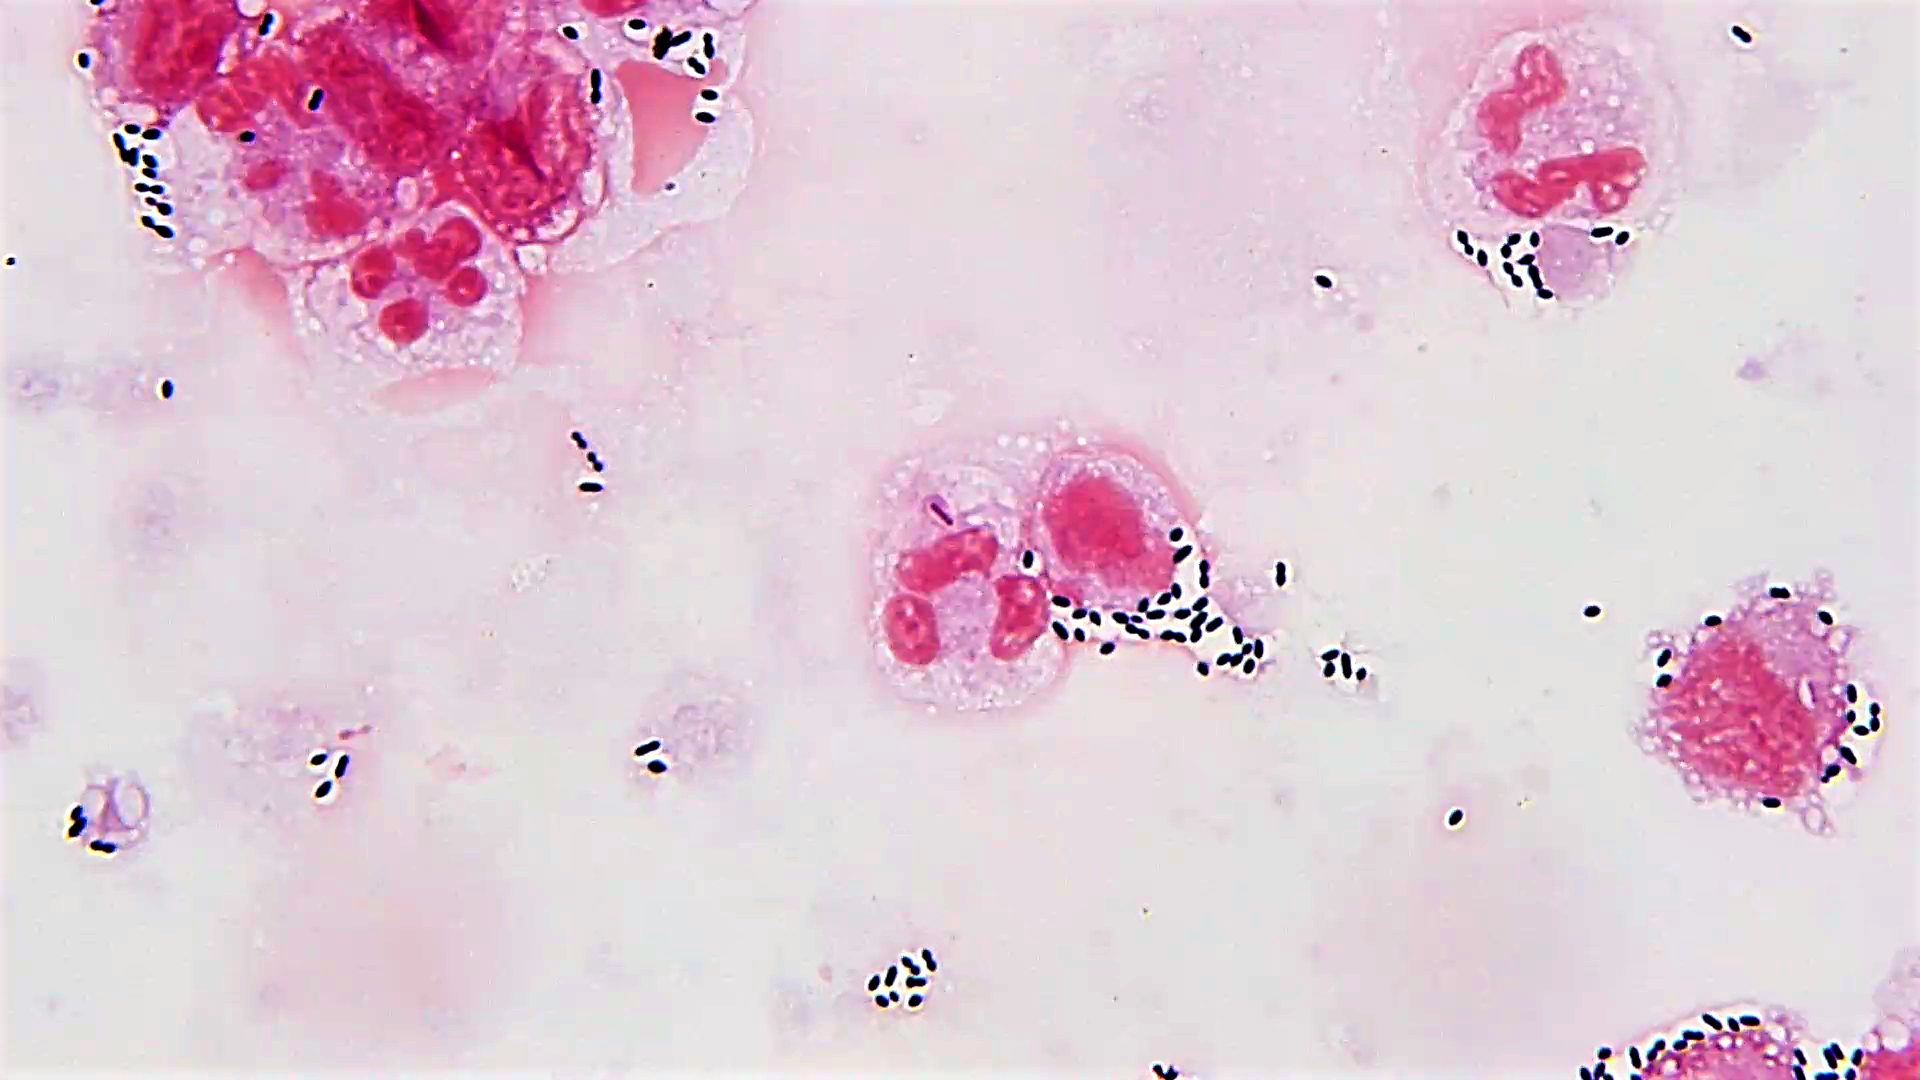 streptococcus pneumoniae gram stain csf